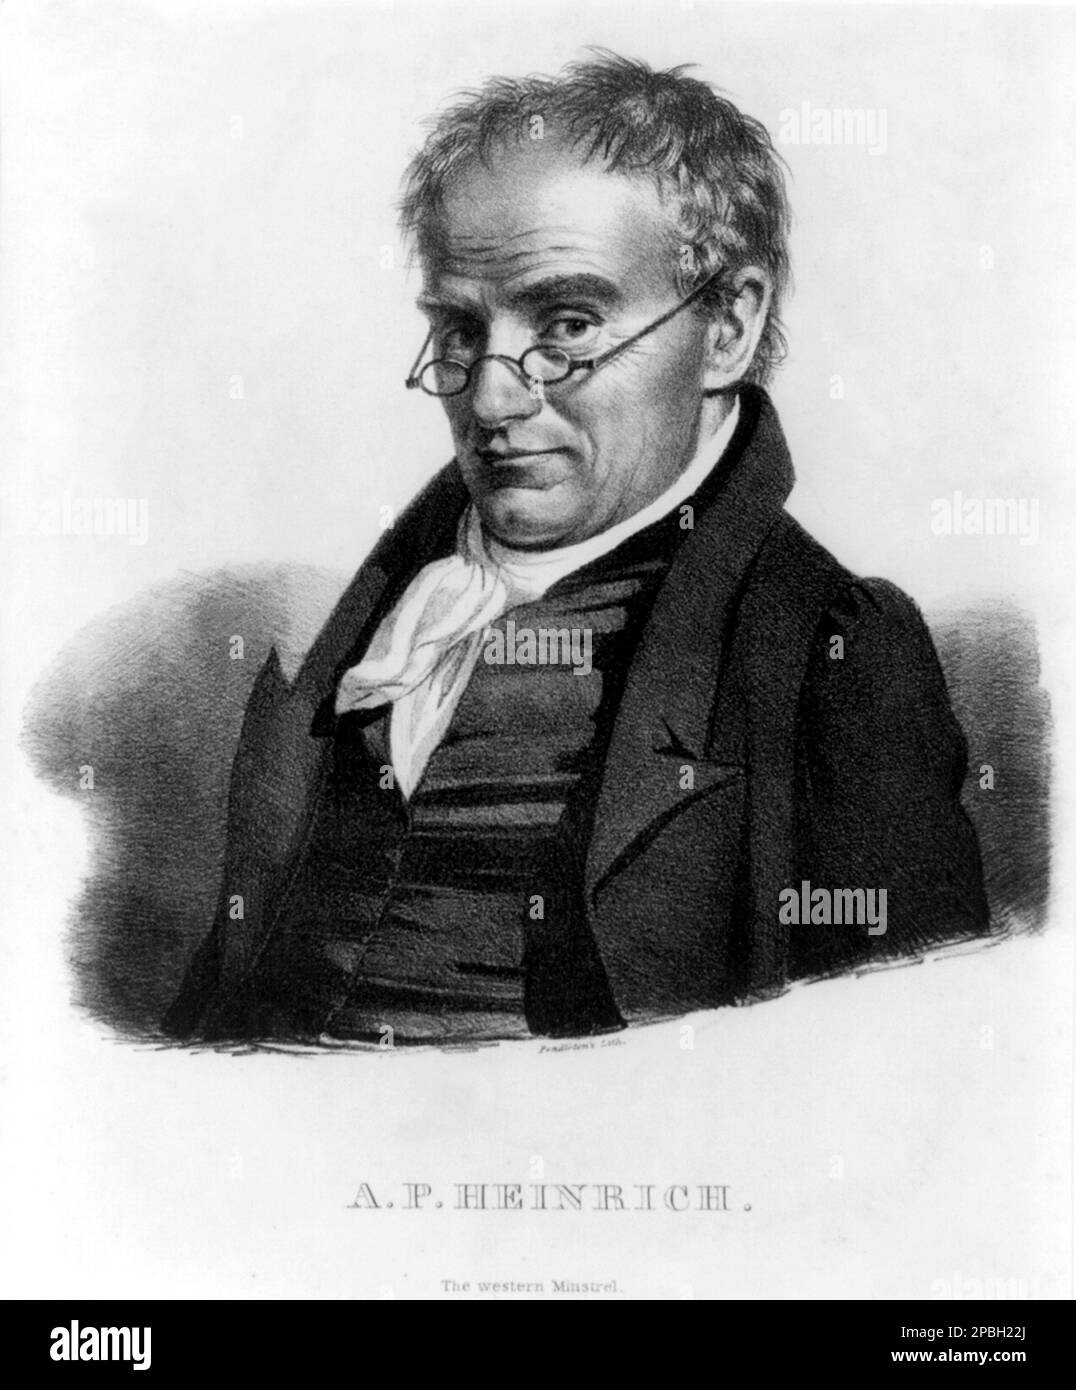 El compositor estadounidense A. P. HEINRICH ( Anthony Philip , 1781-1861 ), The Western Ministrel . Varado en los EE.UU. Por el colapso de su fortuna en las guerras napoleónicas, decidió volver a caer en su afición y convertirse en un músico profesional. - COMPOSITORE - CLASICA - CLÁSICA - RETRATO - MUSICISTA - MUSICA - CRAVATTA - CORTA - COLLAR - LENTE - occhiali da vista - grabado - incisión - ilustración - ARCHIVO GBB Foto de stock